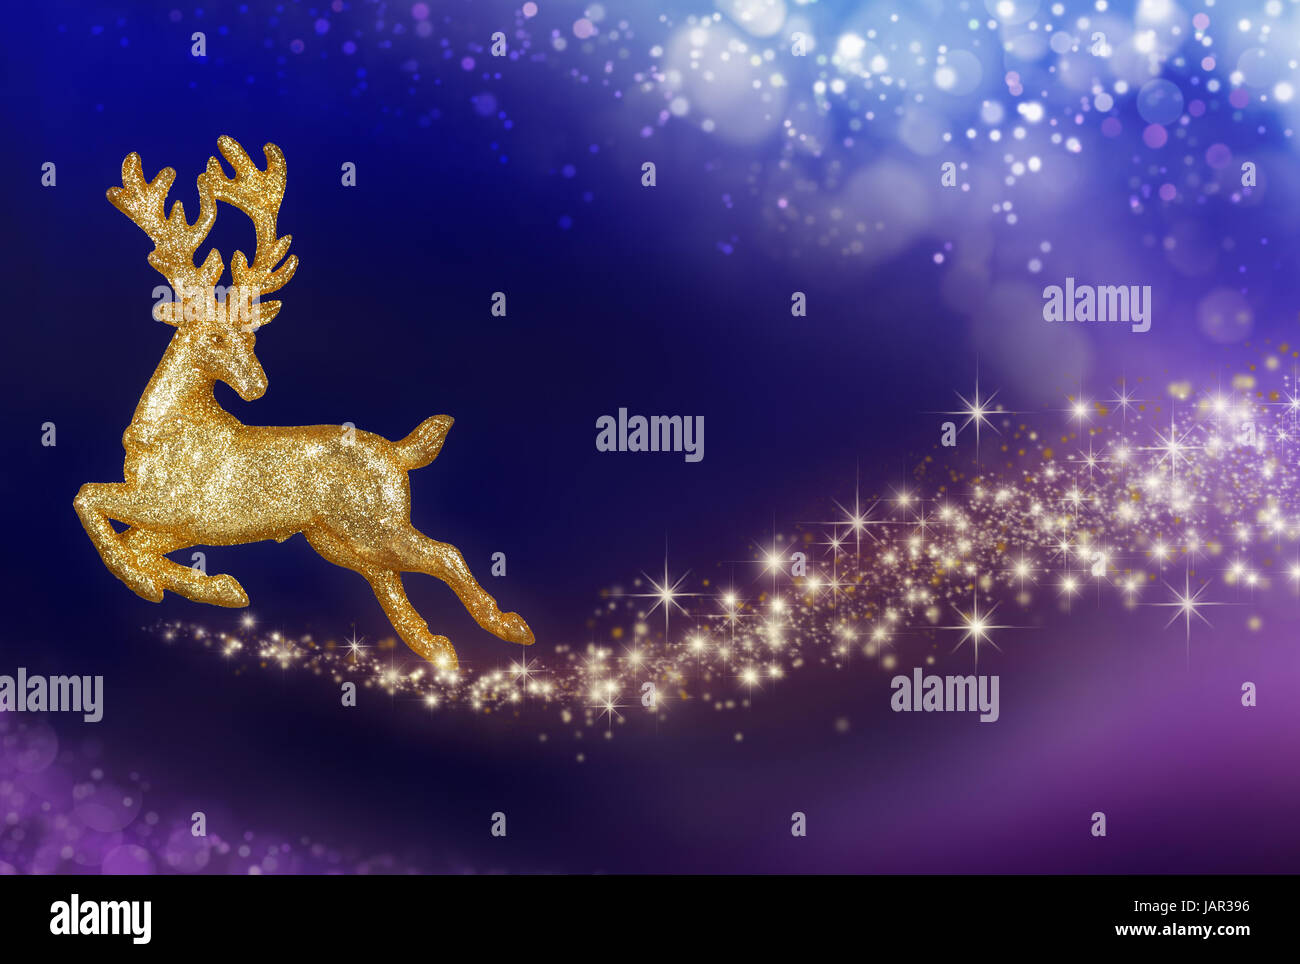 Goldenes Rentier fliegt in einem abstrakten Nachthimmel, mit glitzerndem Schweif Stock Photo